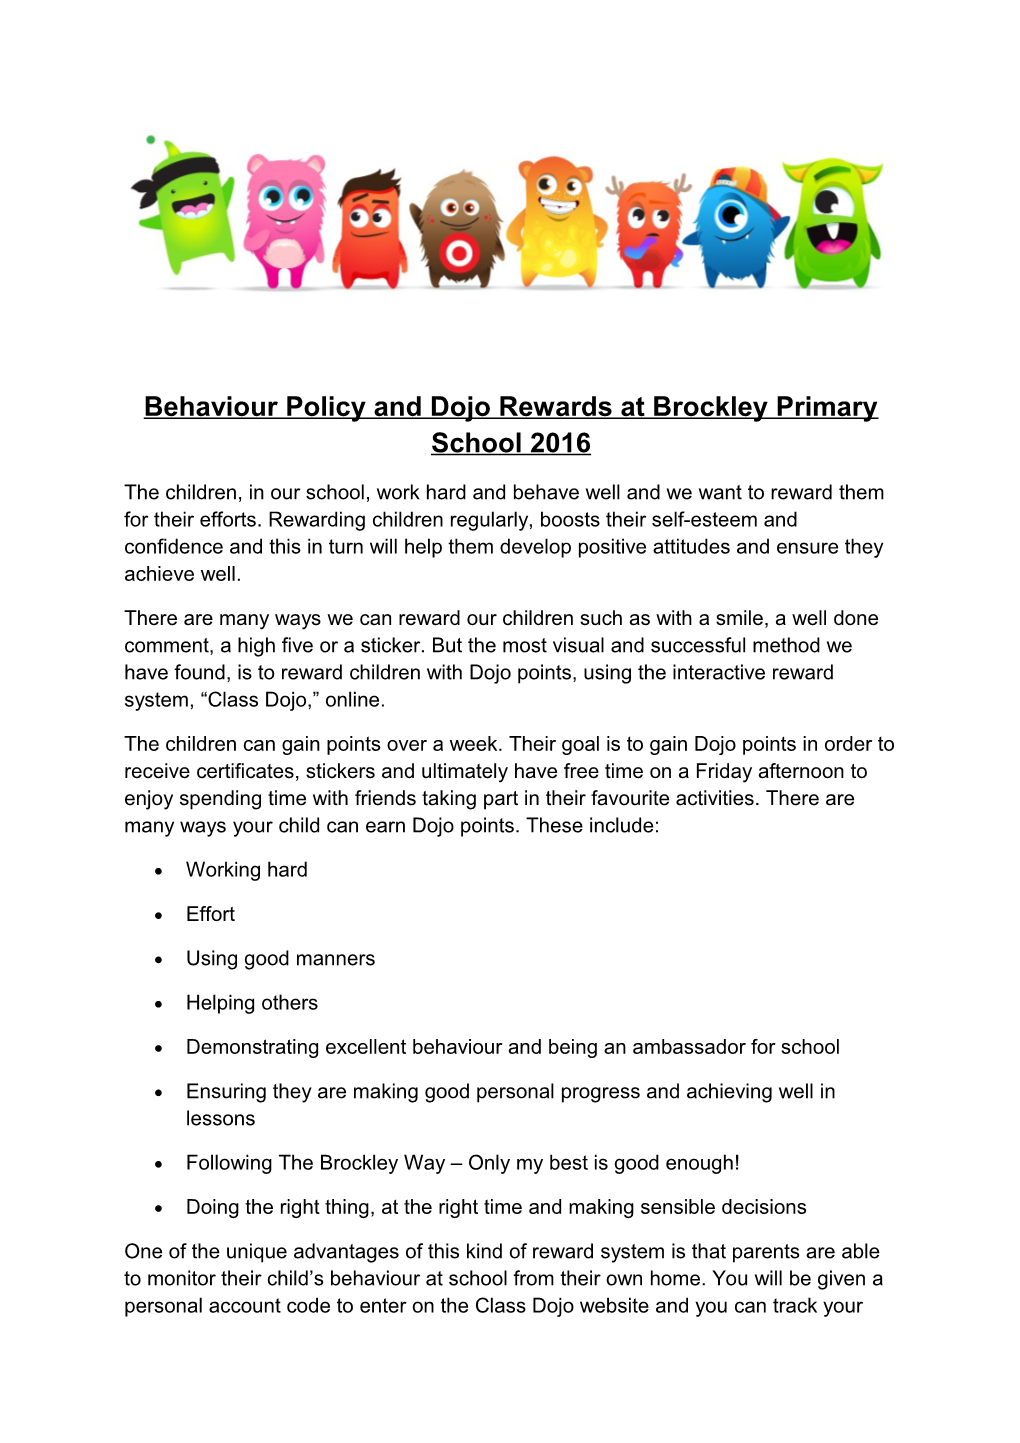 Behaviour Policy and Dojo Rewards at Brockley Primary School 2016